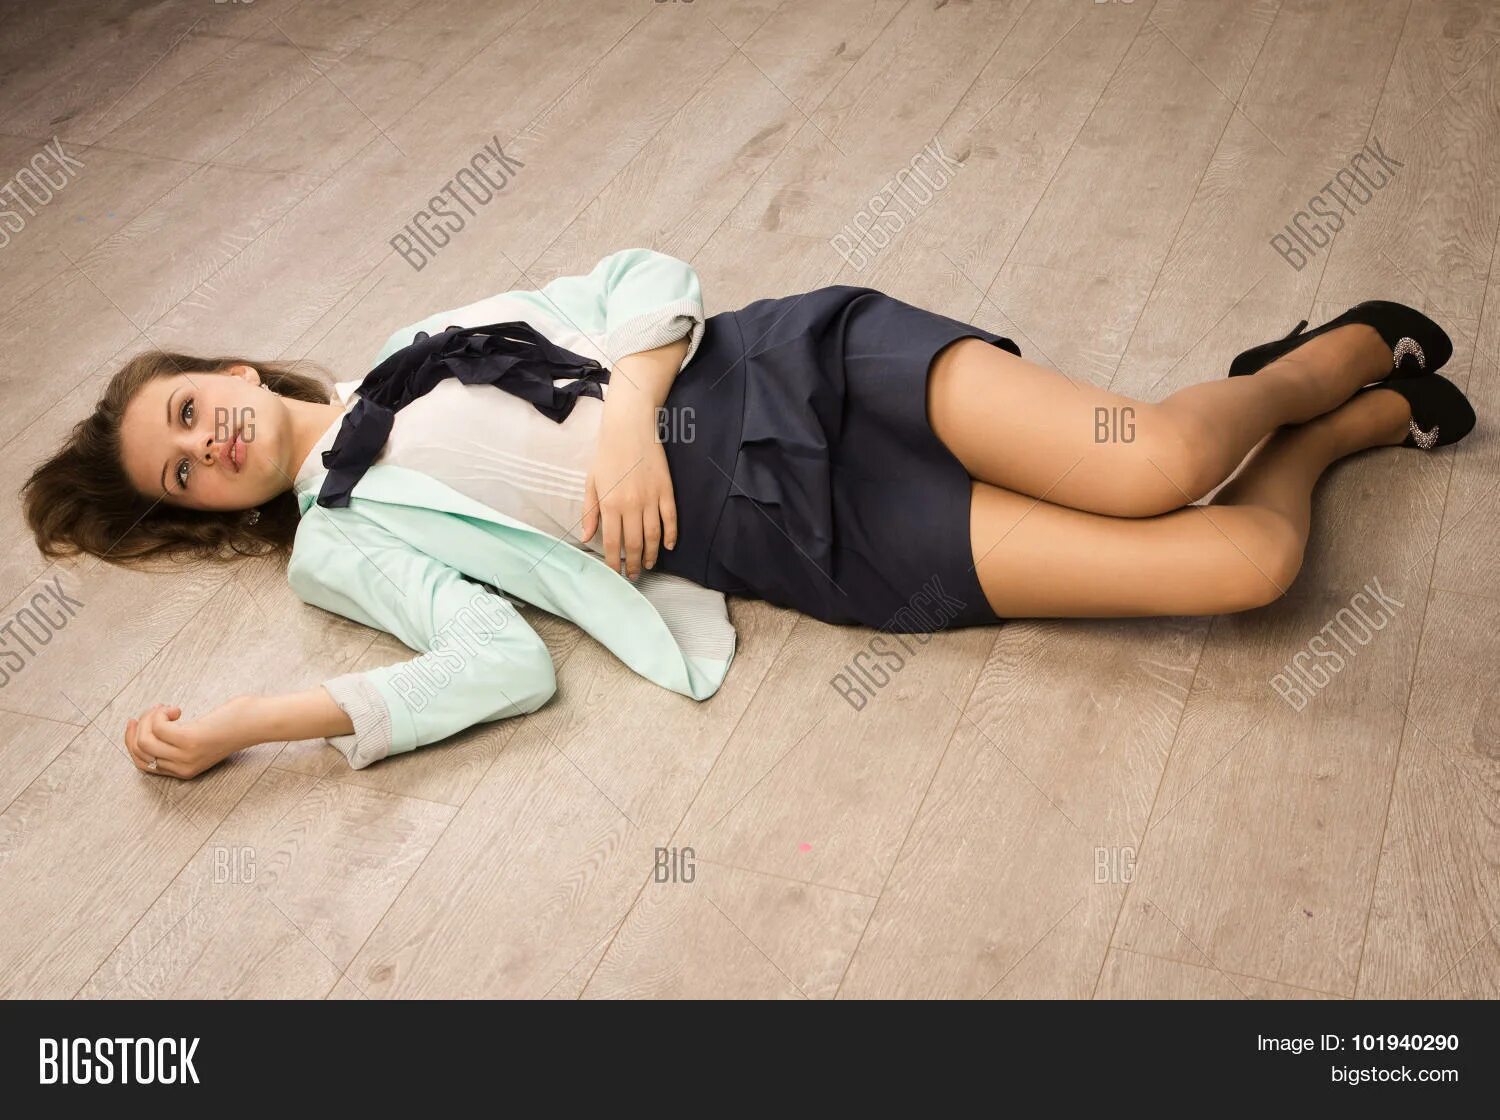 Придушенная девушка. Девушка лежит на полу. Девушка лежит без сознания.